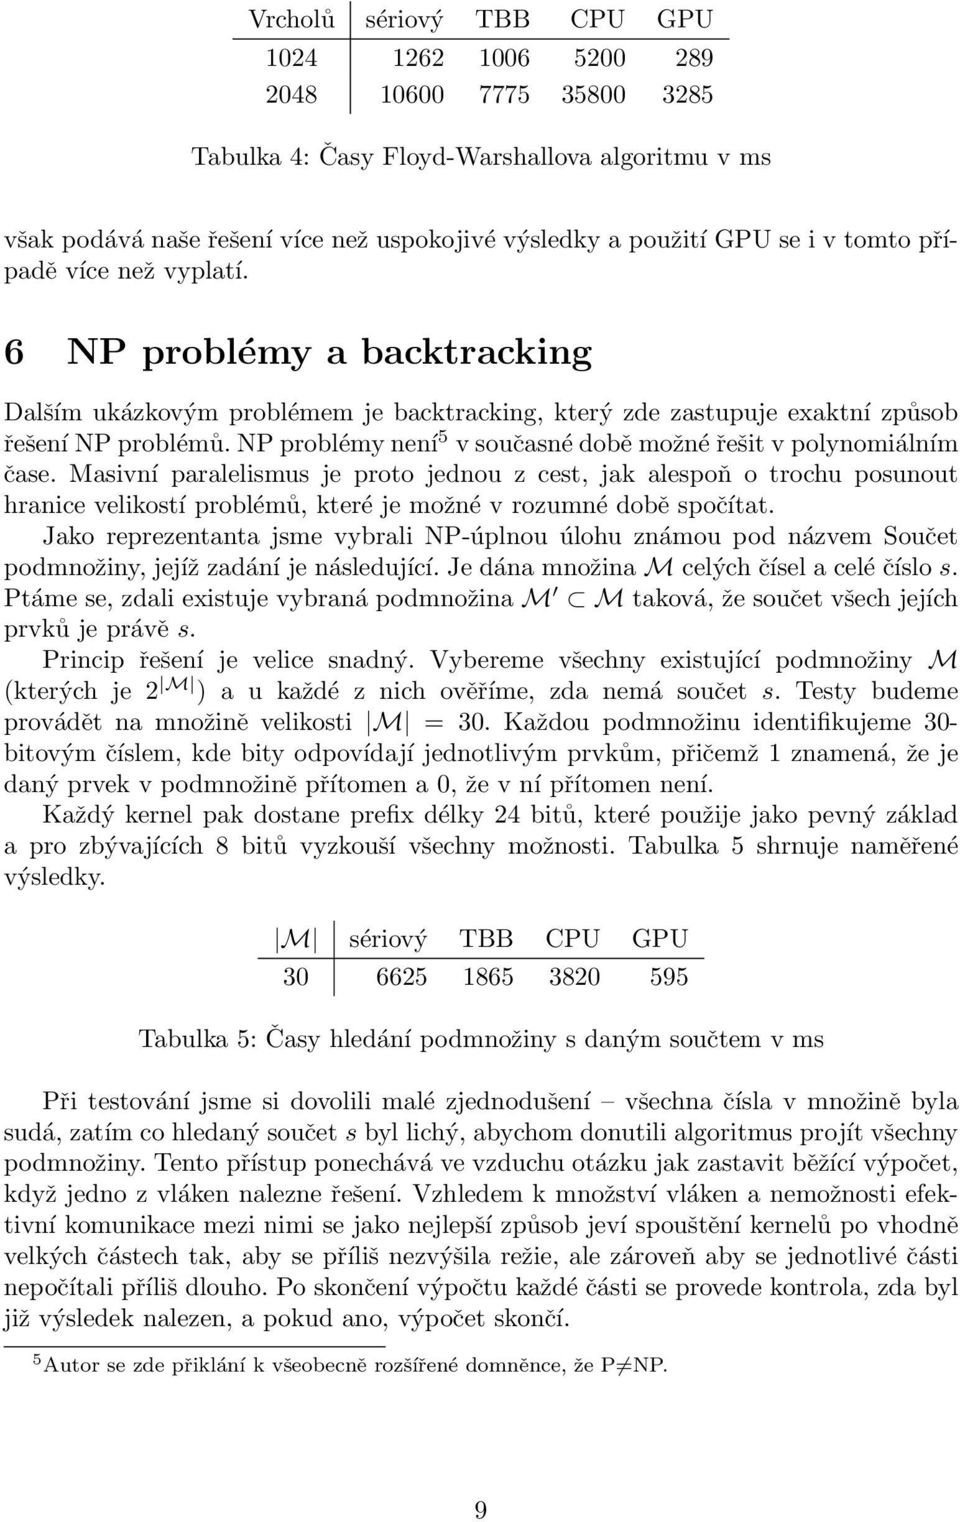 NP problémy není 5 v současné době možné řešit v polynomiálním čase.